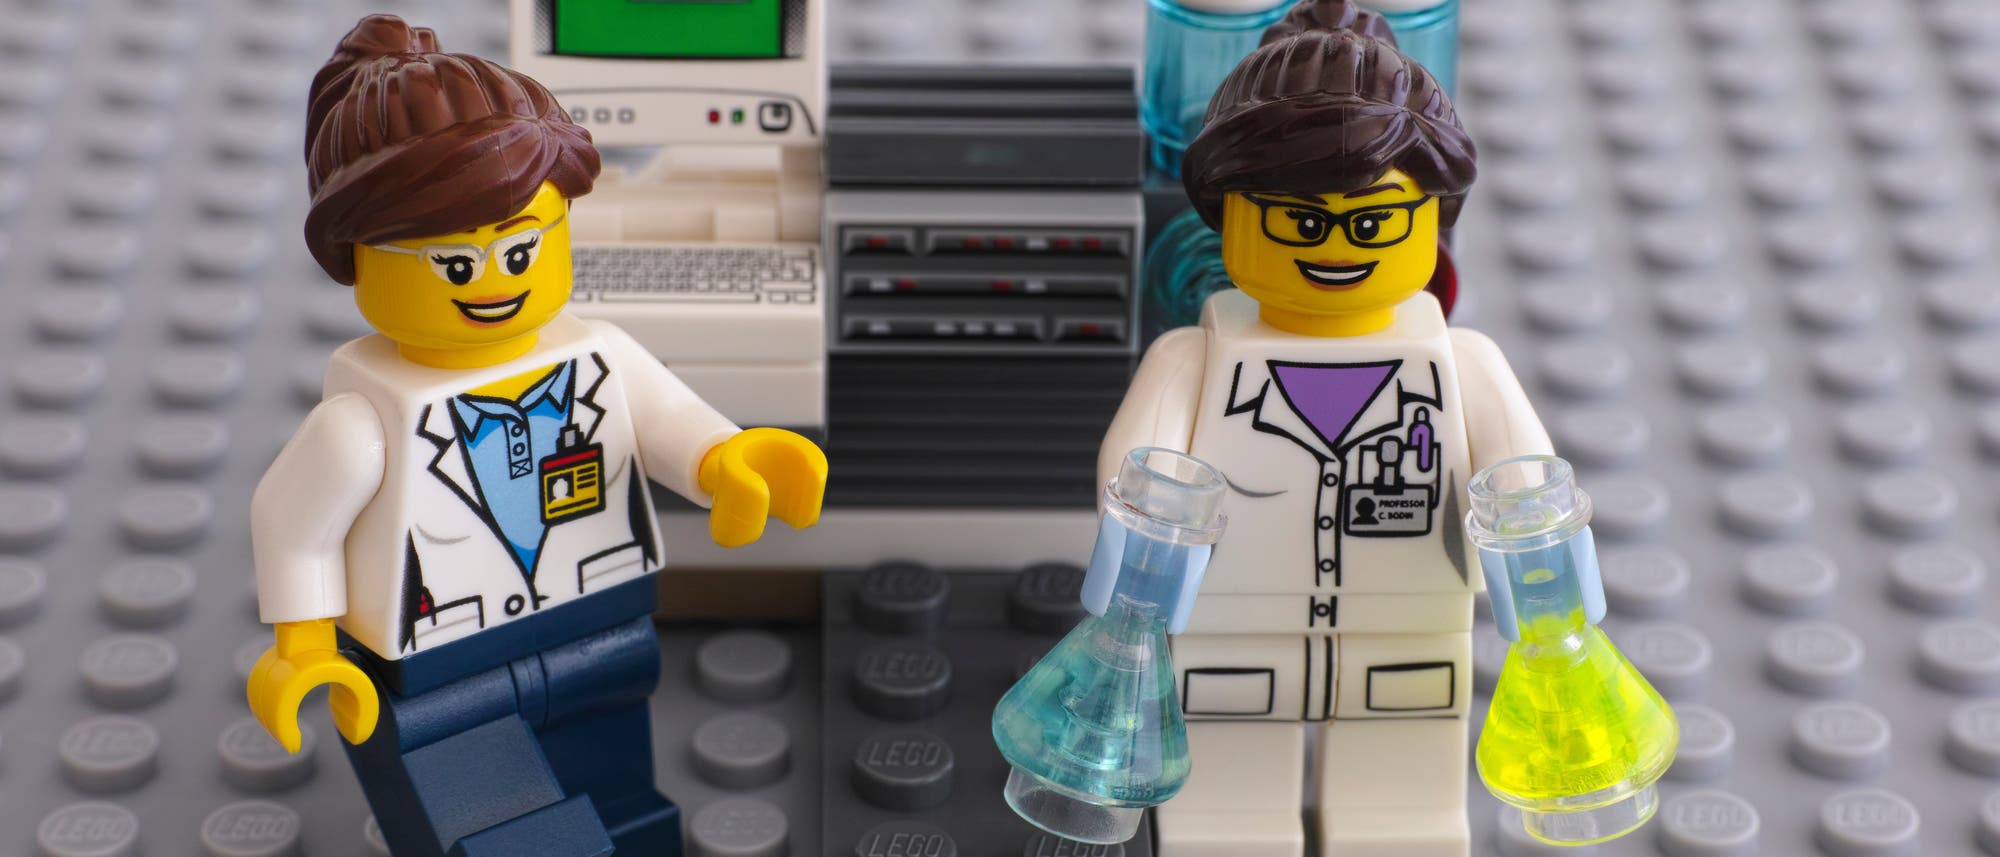 Lego-Laborset Chemie. Explosionen nicht im Lieferumfang enthalten